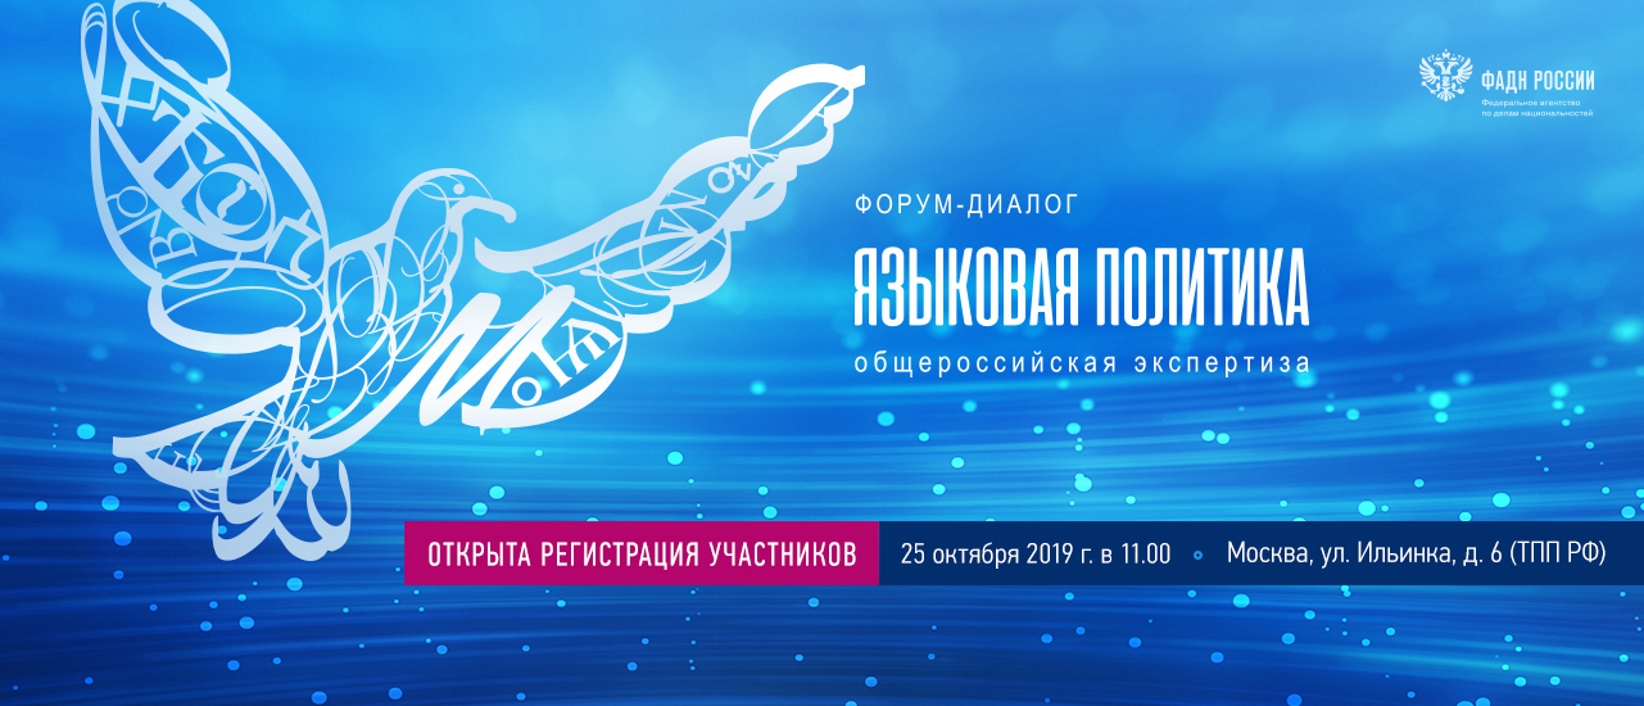  Форум «Языковая политика: общероссийская экспертиза» откроется в Москве